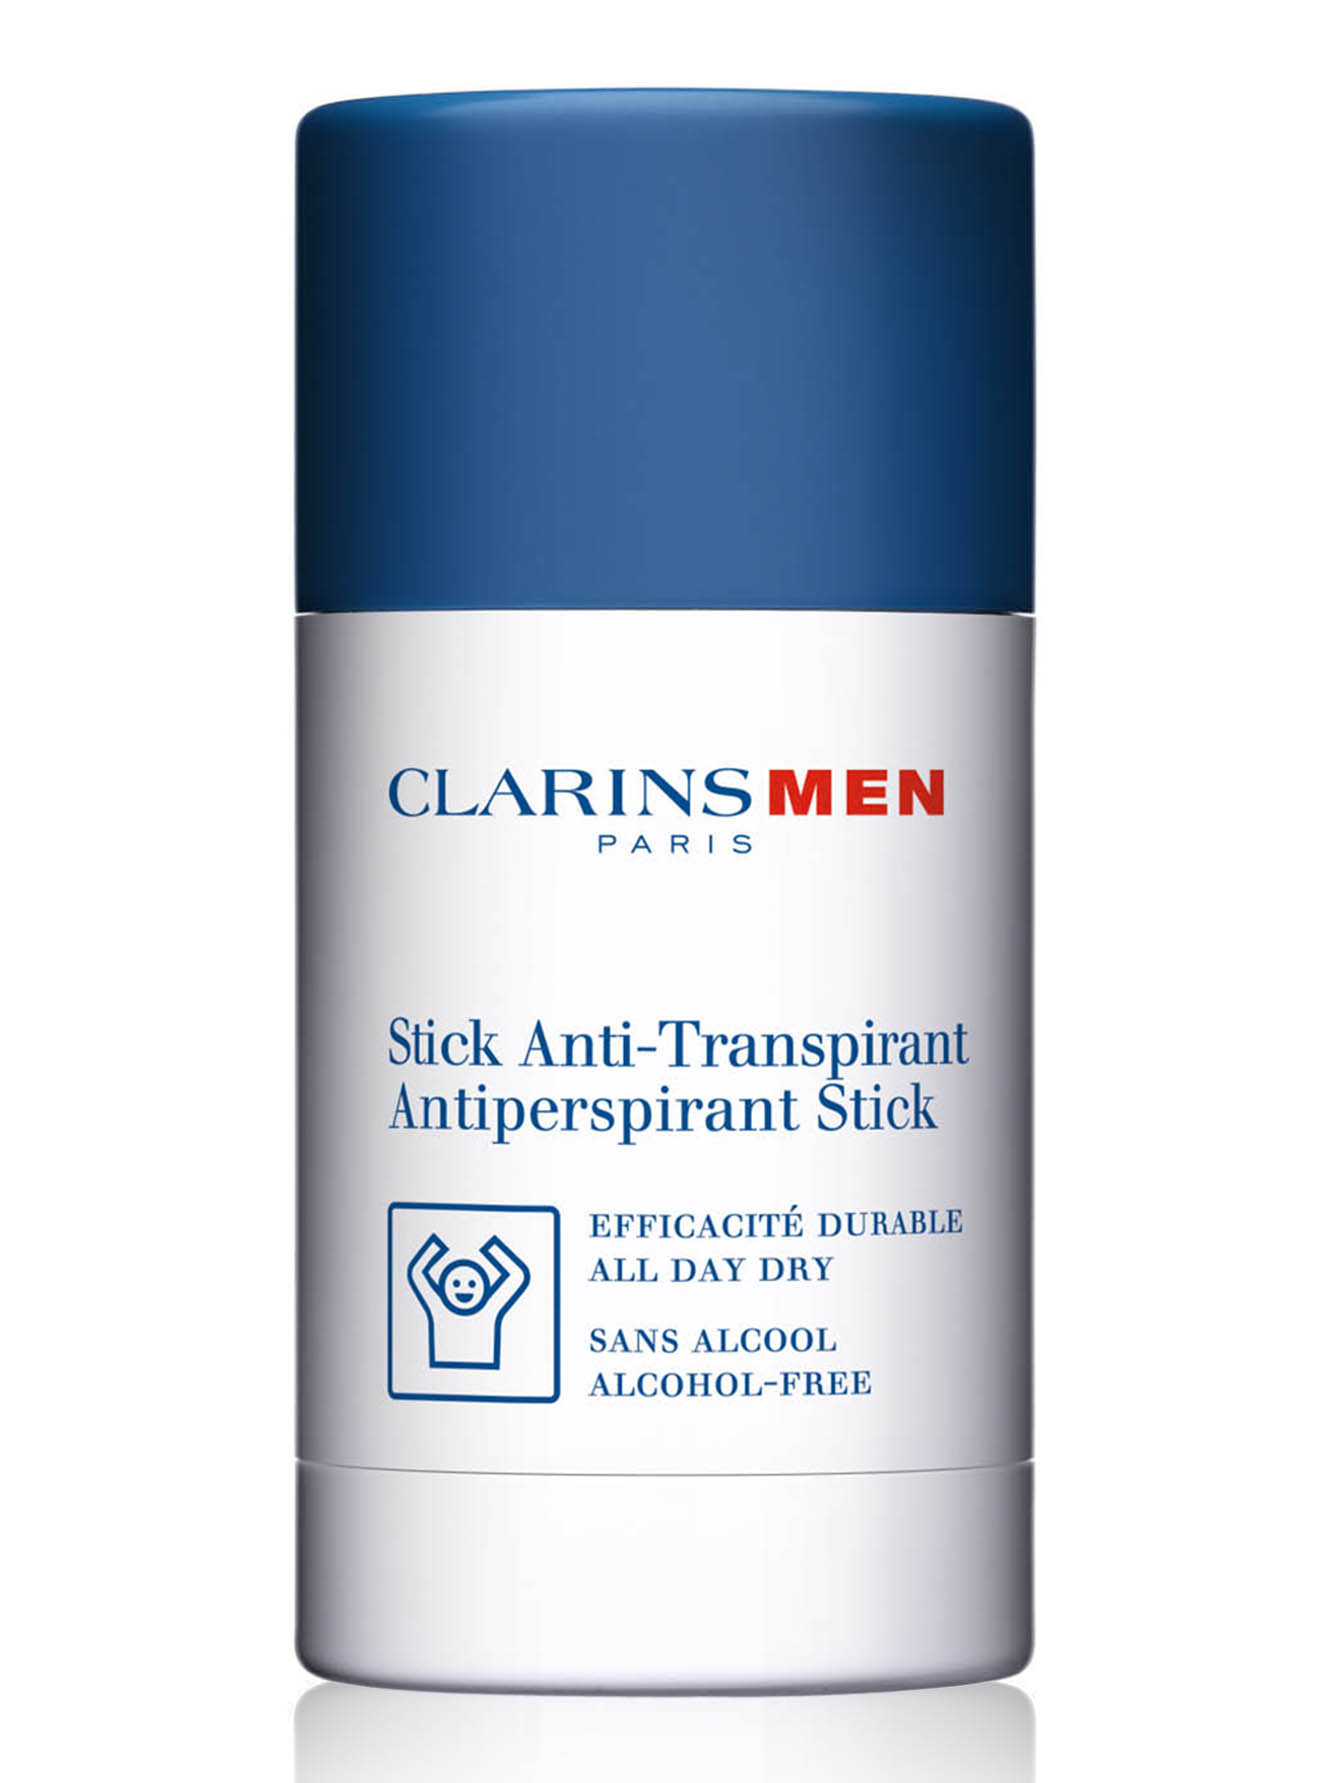 Стик для мужчин. Clarins дезодорант-стик антиперспирант для мужчин Stick Antiperspirant. Шариковый дезодорант кларанс для мужчин. Clarins дезодорант мужской стик. УЛОРАНС дезодорант мужской.